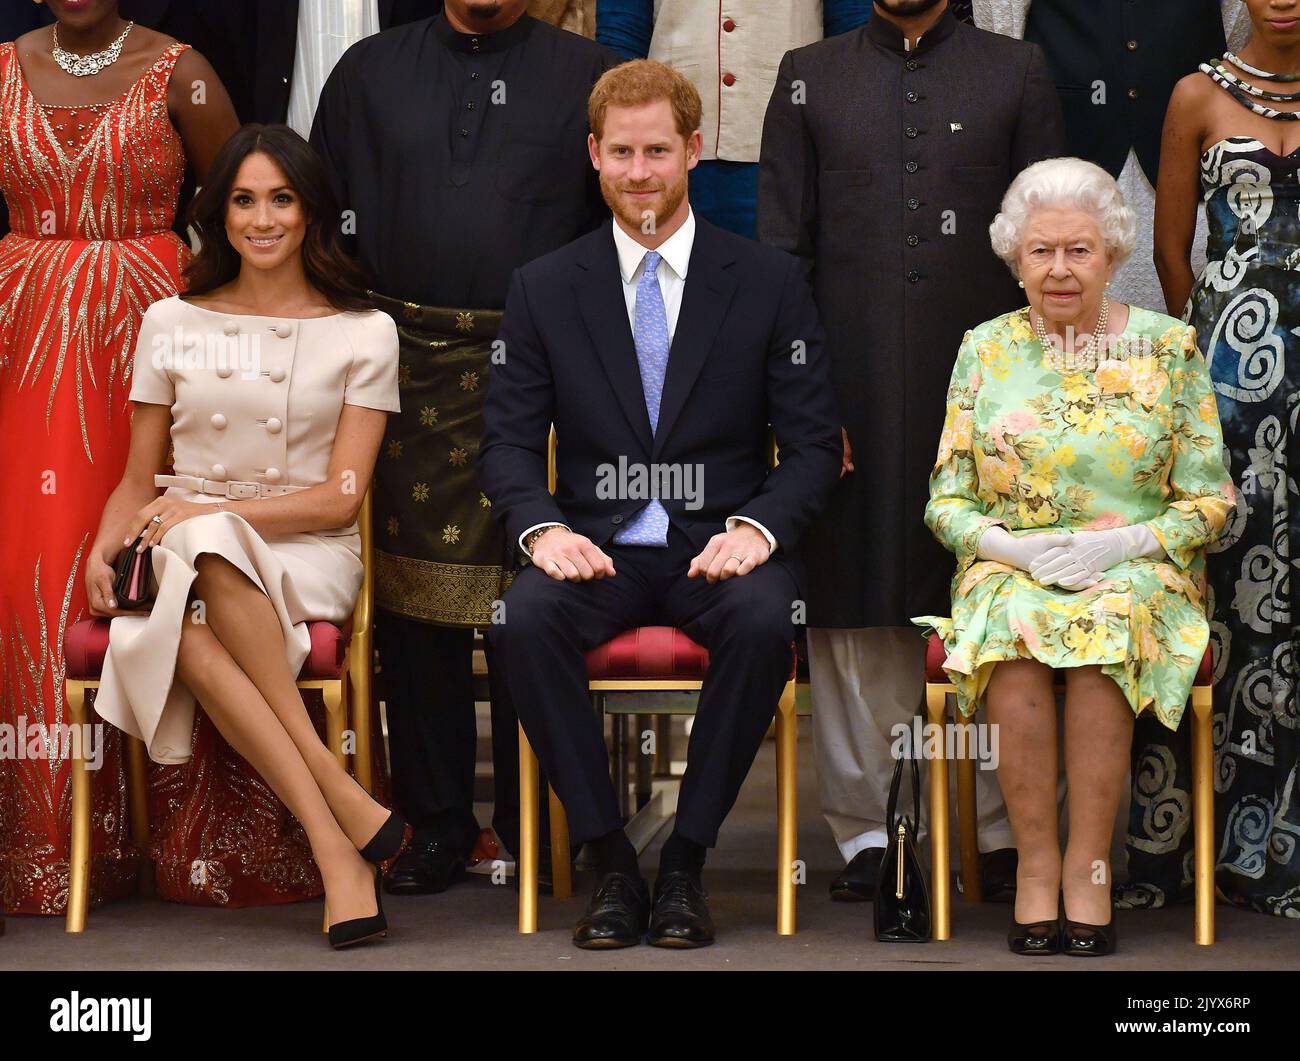 Foto de archivo fechada el 26/06/2018 de la Reina Isabel II con el duque y la duquesa de Sussex durante una foto de grupo en la ceremonia de entrega de premios a los Jóvenes Líderes de la Reina en el Palacio de Buckingham, Londres. La reina murió pacíficamente en Balmoral esta tarde, ha anunciado el Palacio de Buckingham. Fecha de emisión: Jueves 8 de septiembre de 2022. Foto de stock